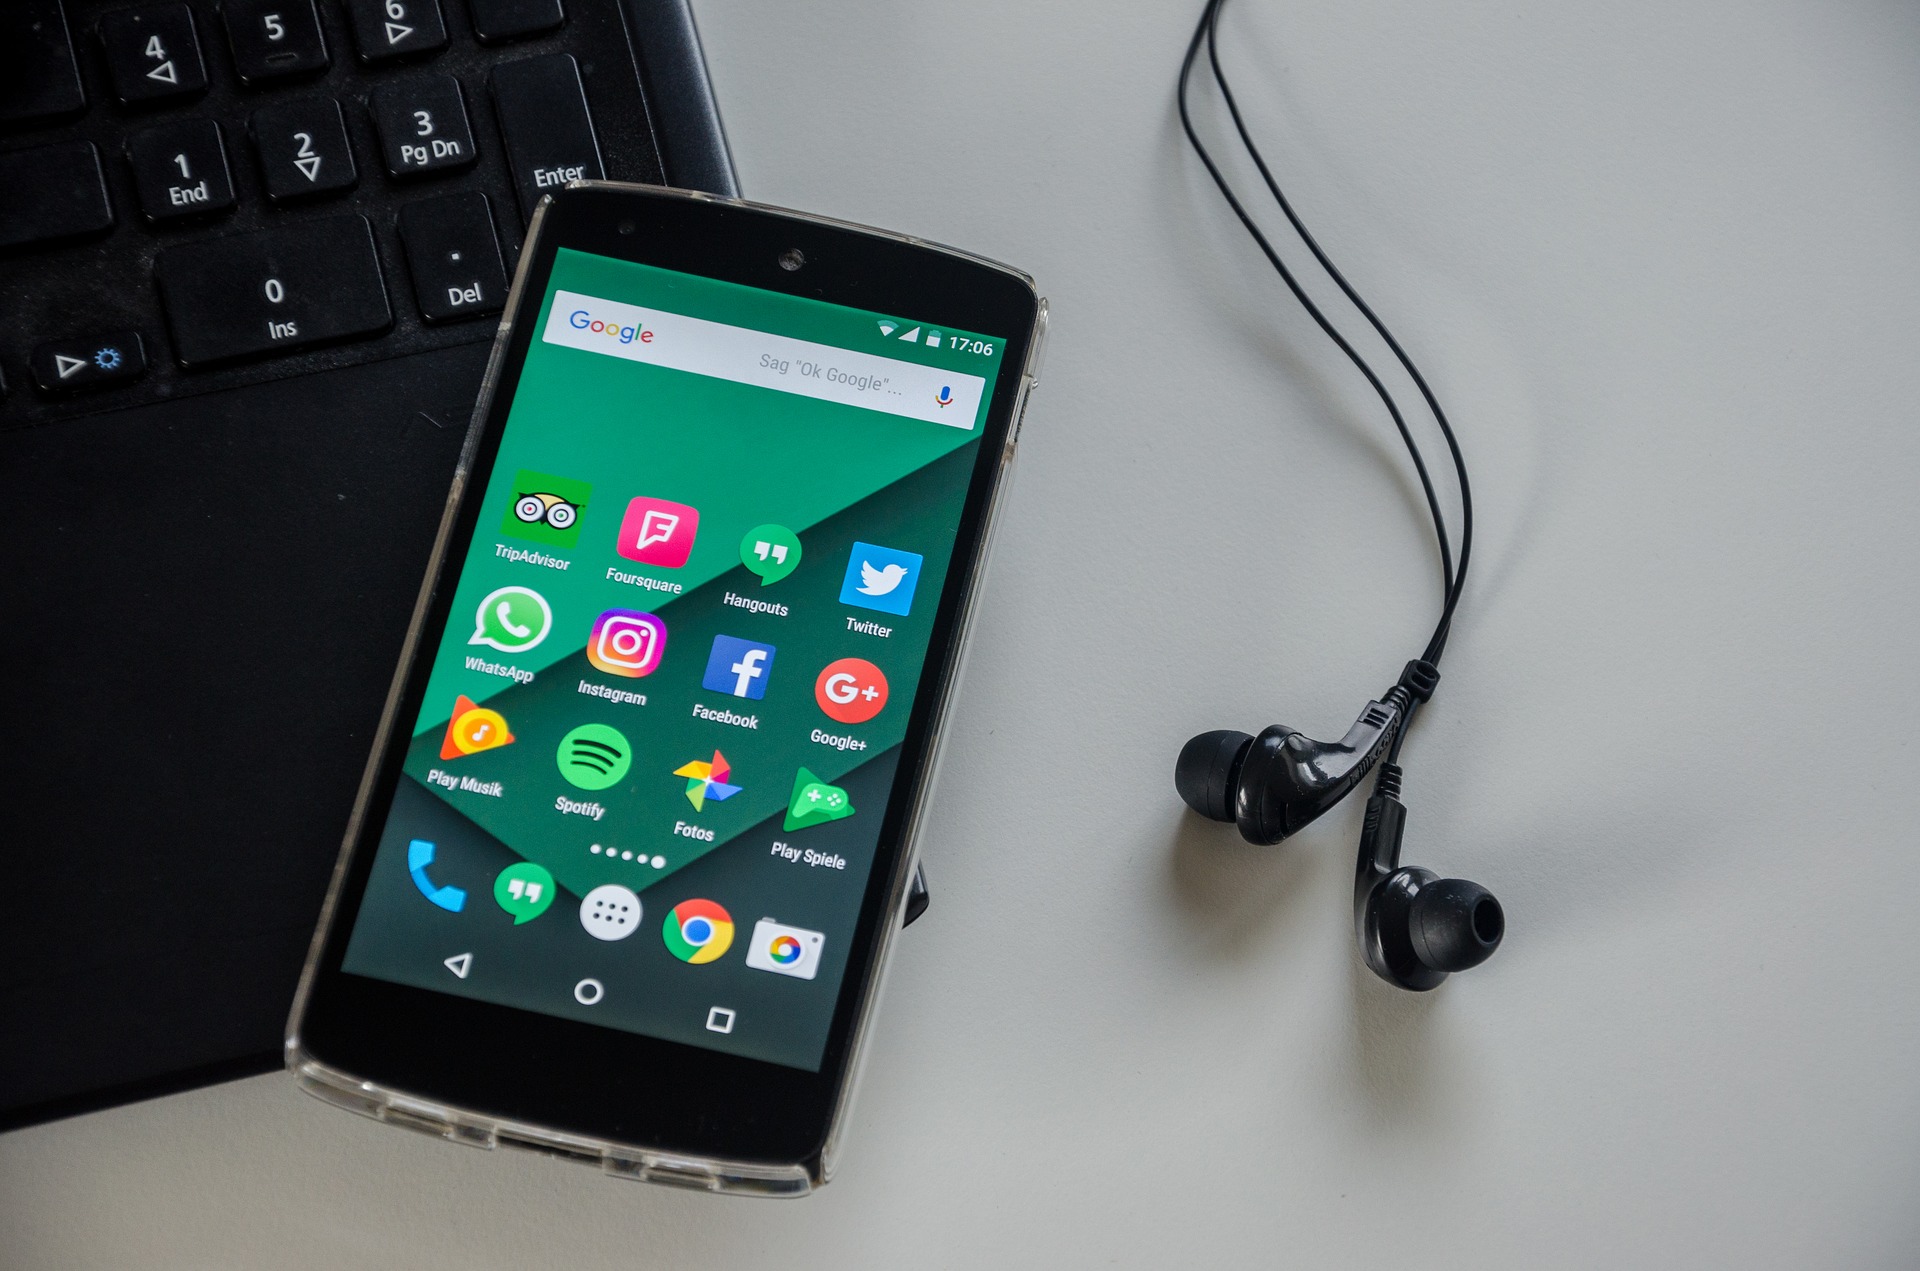 Das Bild zeigt ein Smartphone mit Apps sowie eine Tastatur und Kopfhörer.